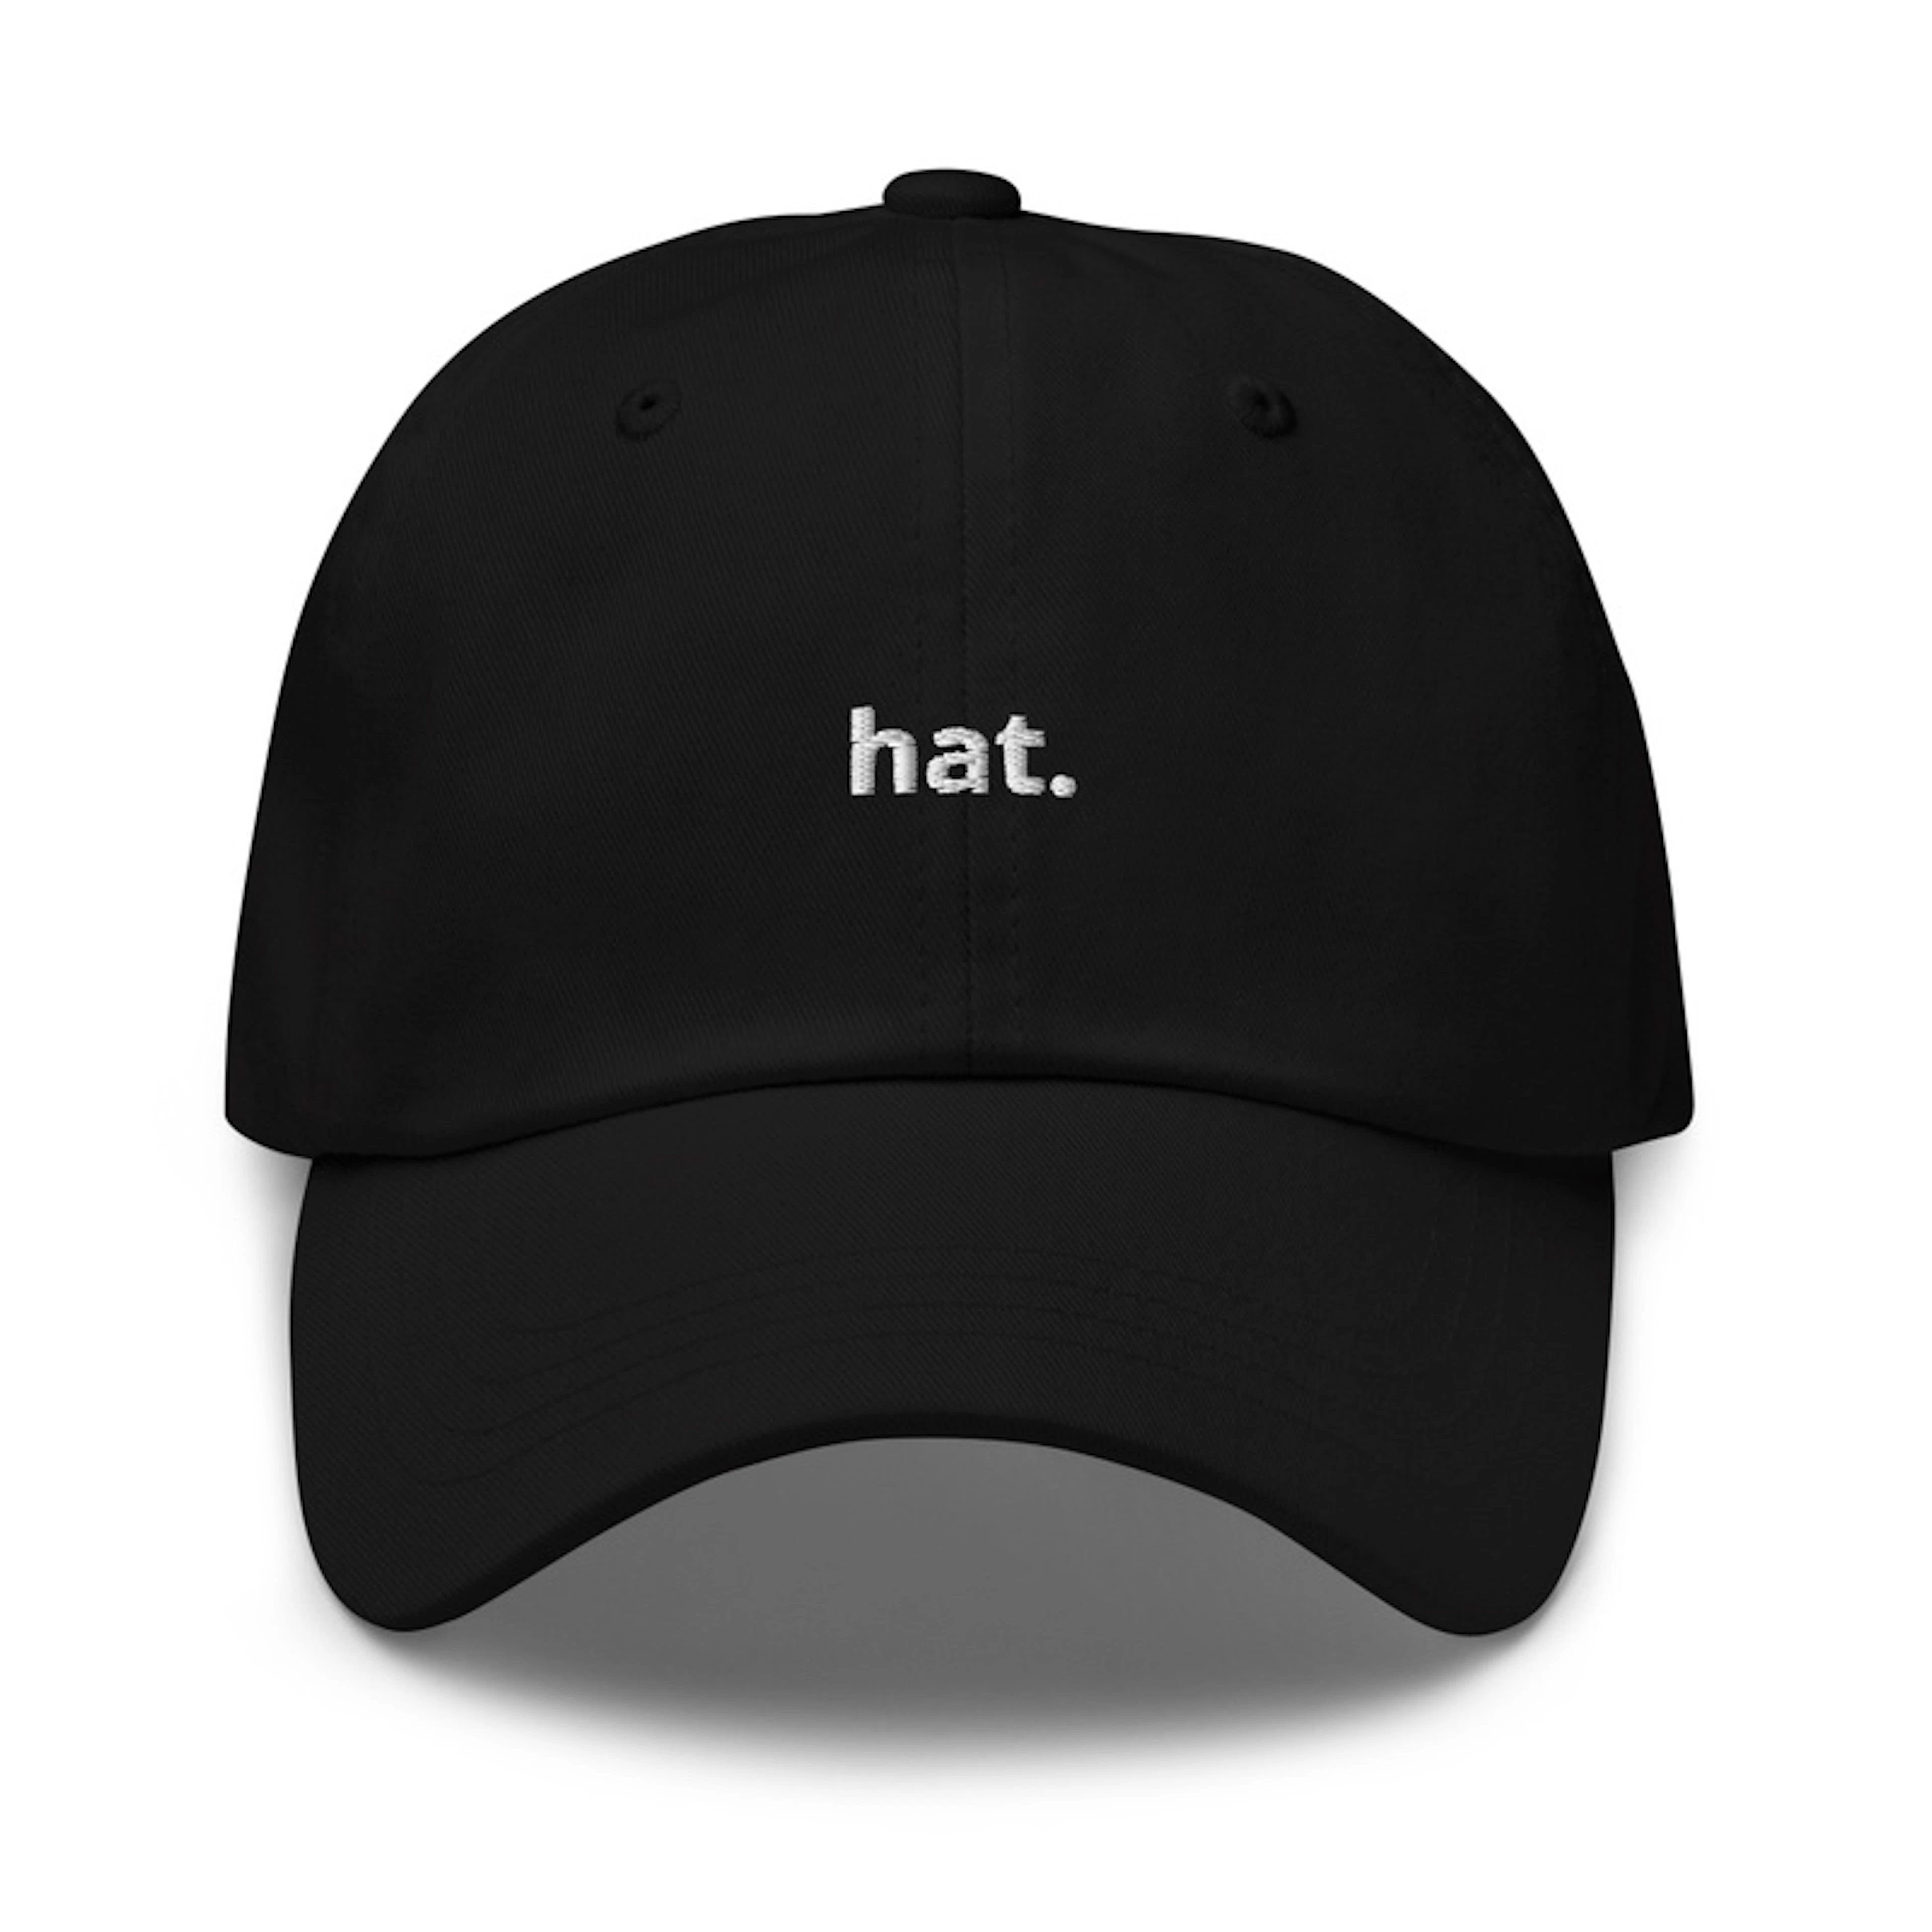 hat.